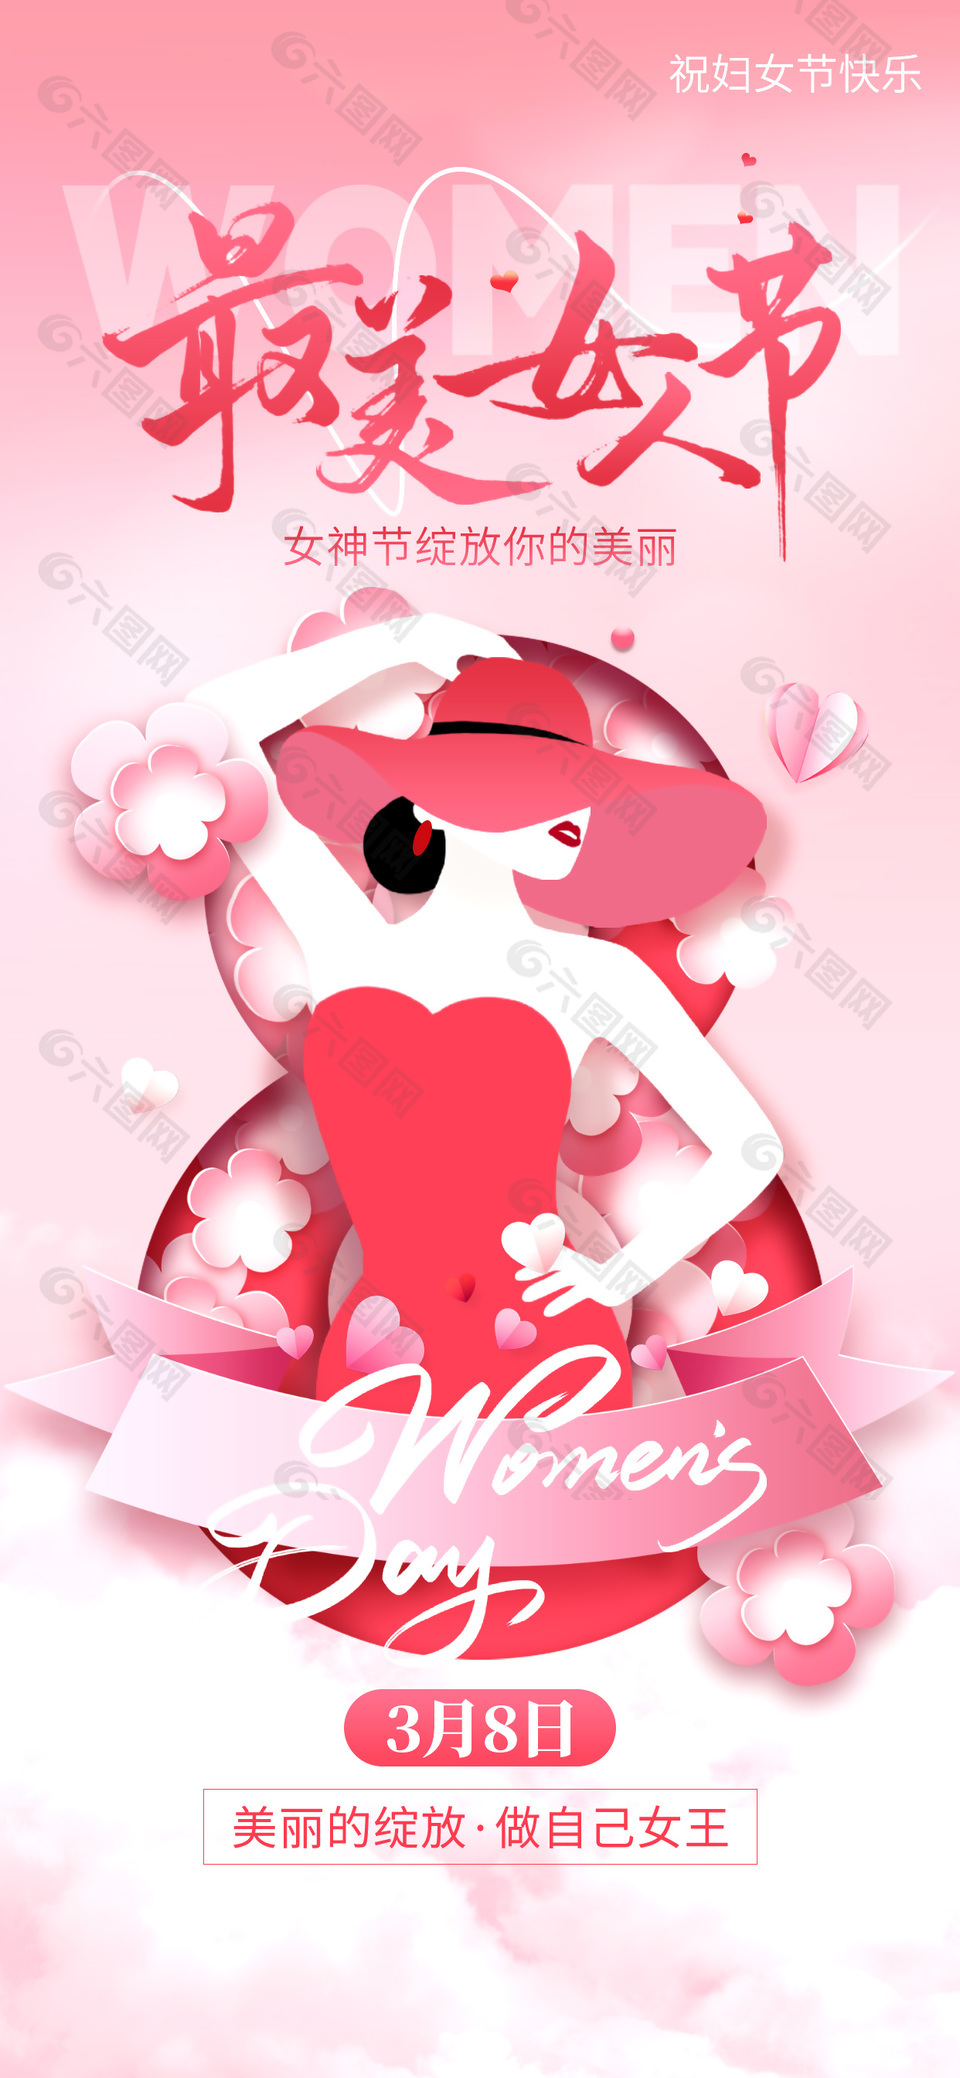 最美女人节粉红色创意剪纸海报下载